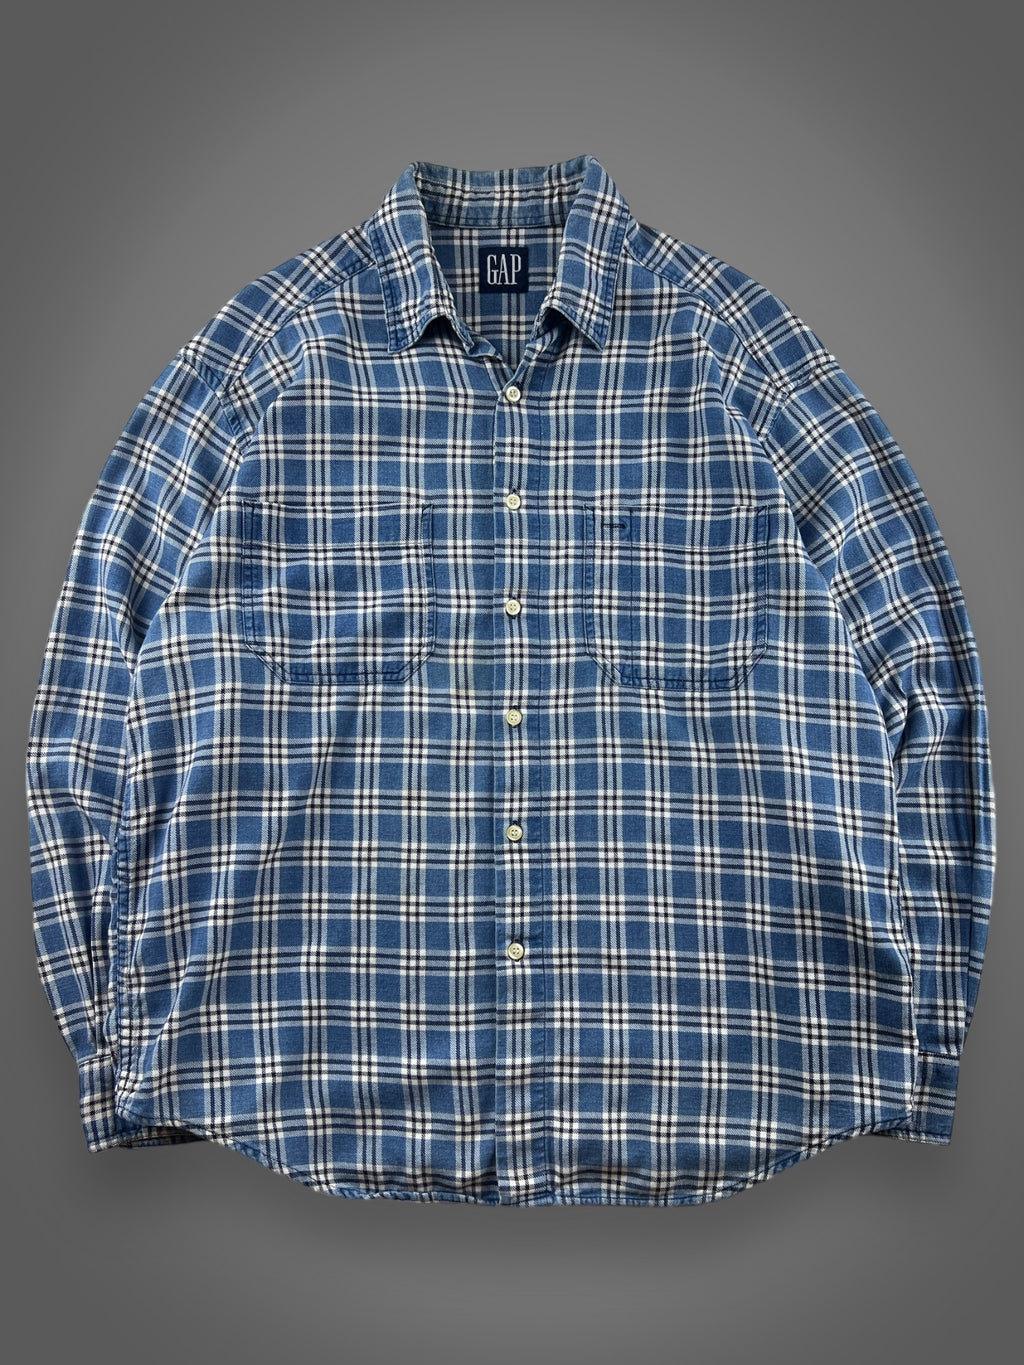 90s GAP plaid flannel button down shirt XL